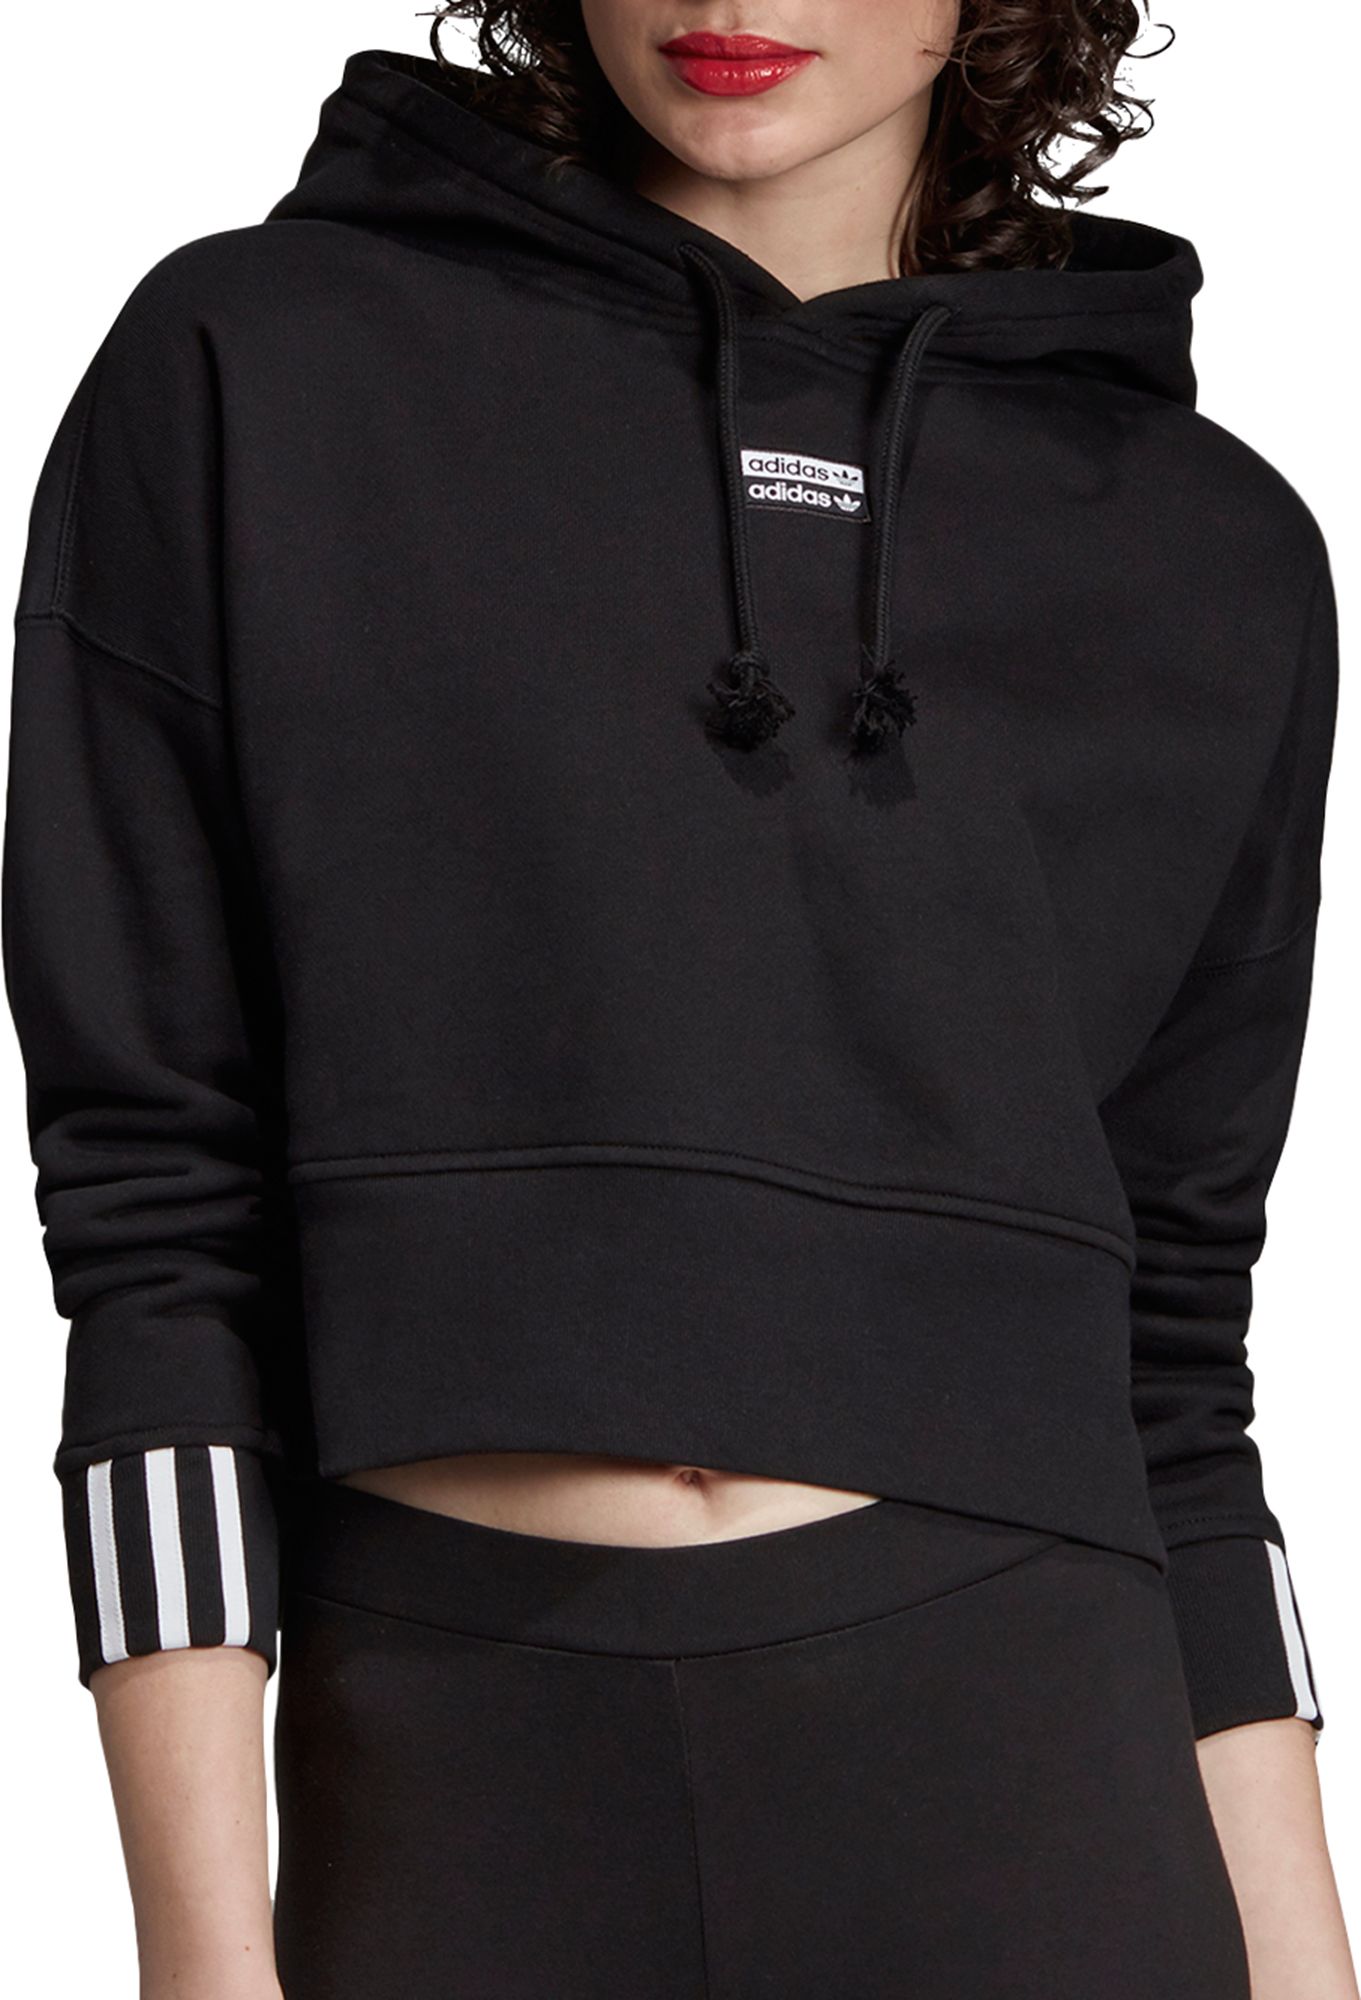 adidas vocal cropped hoodie sweatshirt